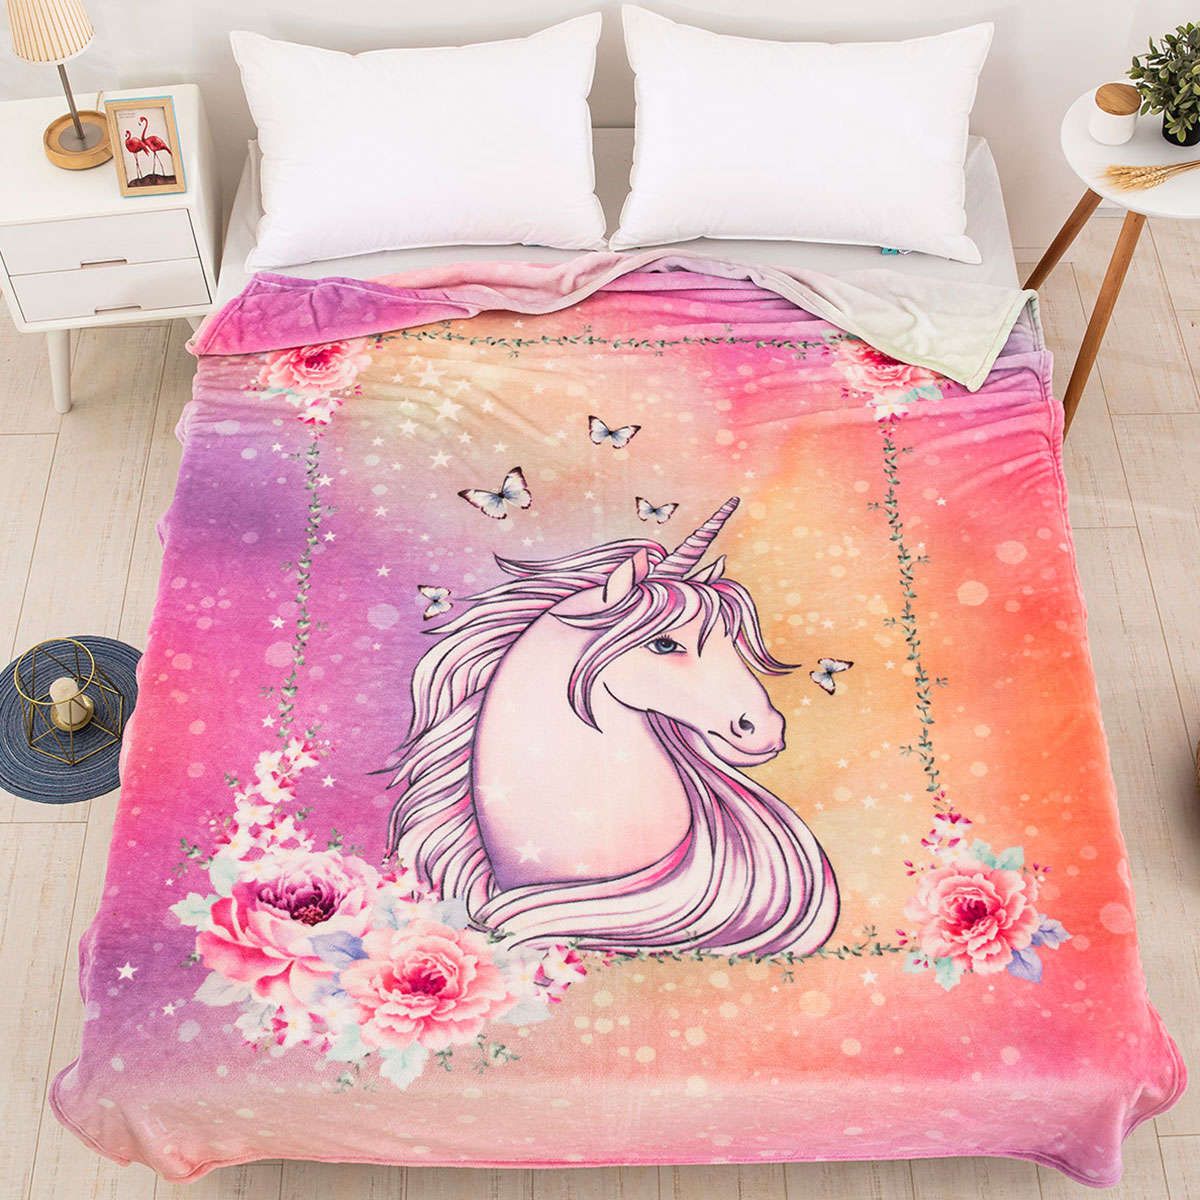 Παιδική κουβέρτα fleece μονή Unicorn Art 6114 beauty home